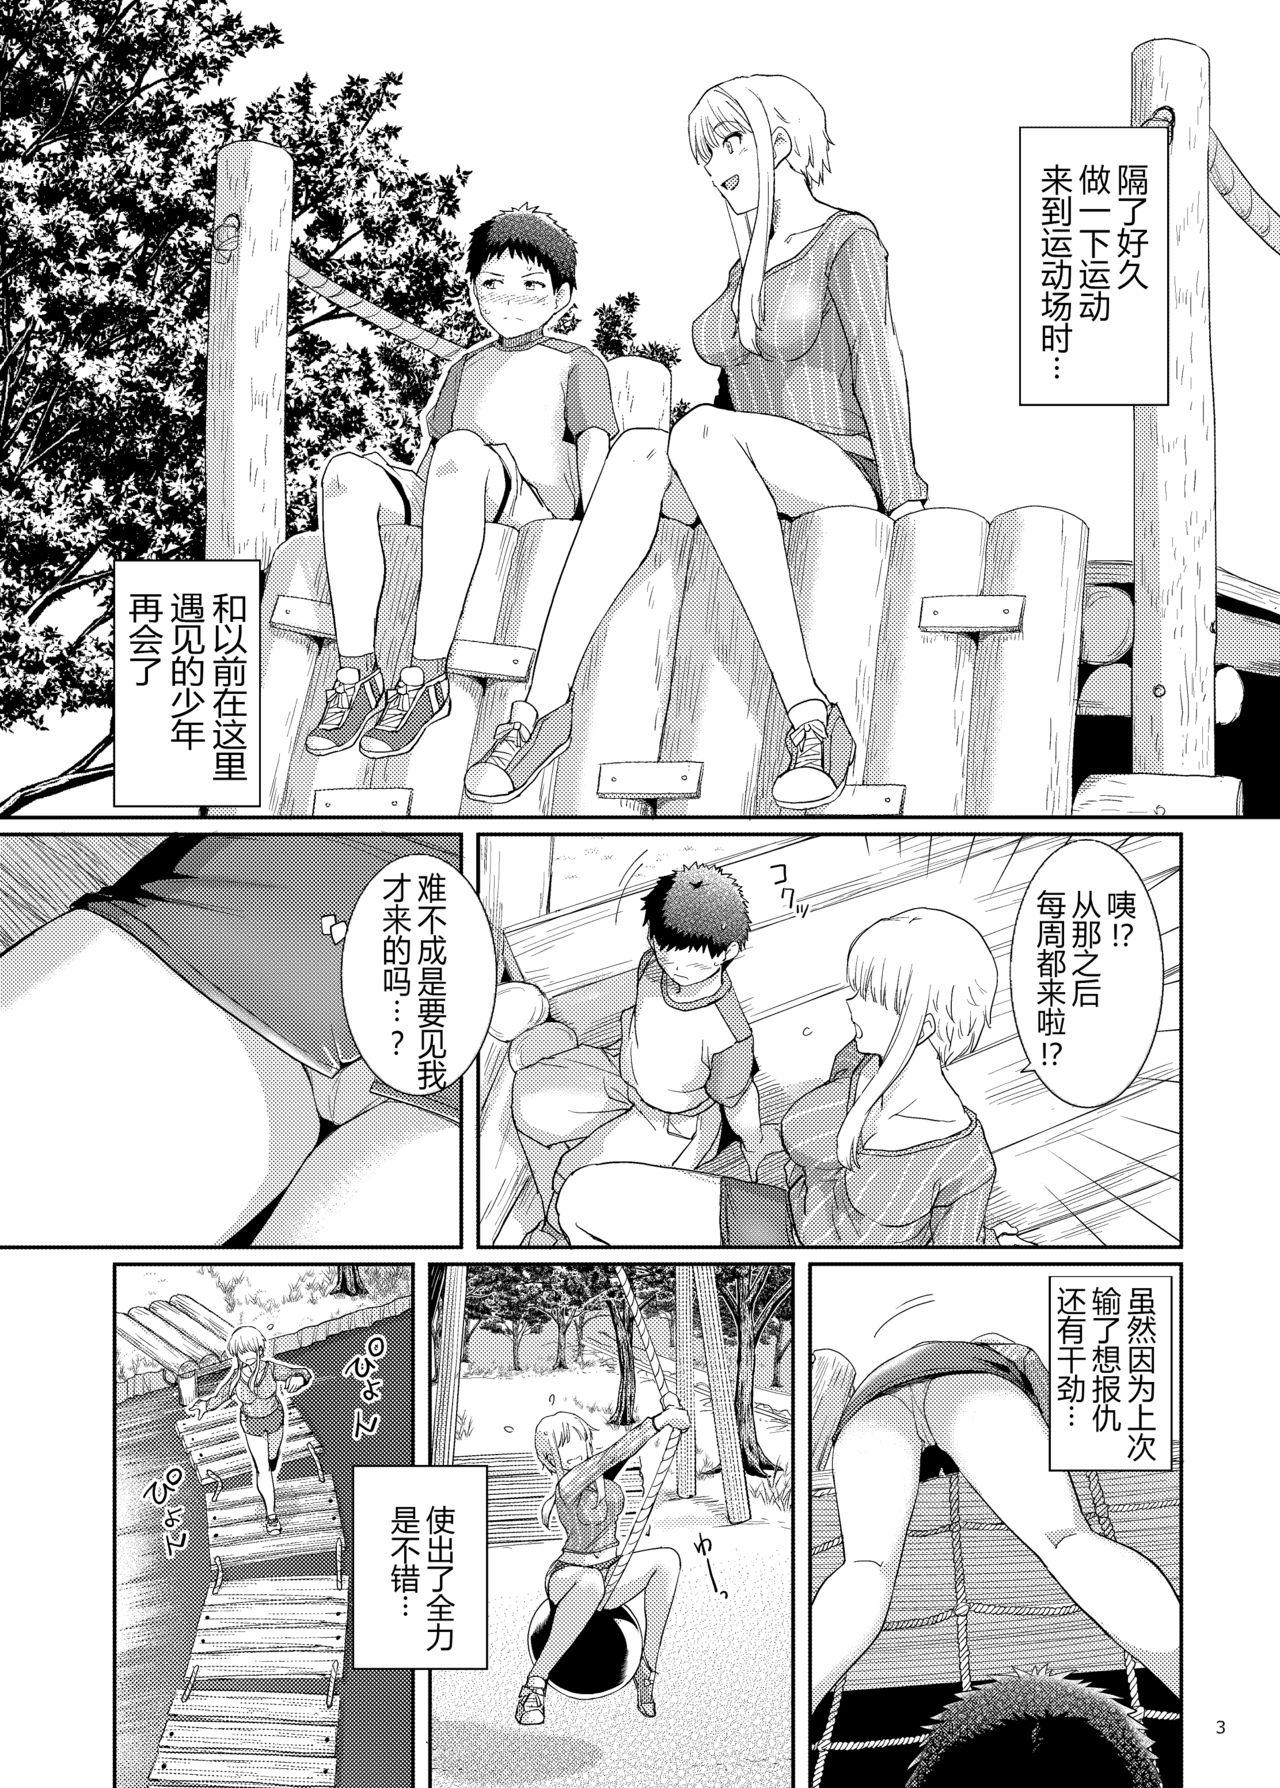 Sexy Ku-neru Sumata 6 - Ku neru maruta Double Penetration - Page 2